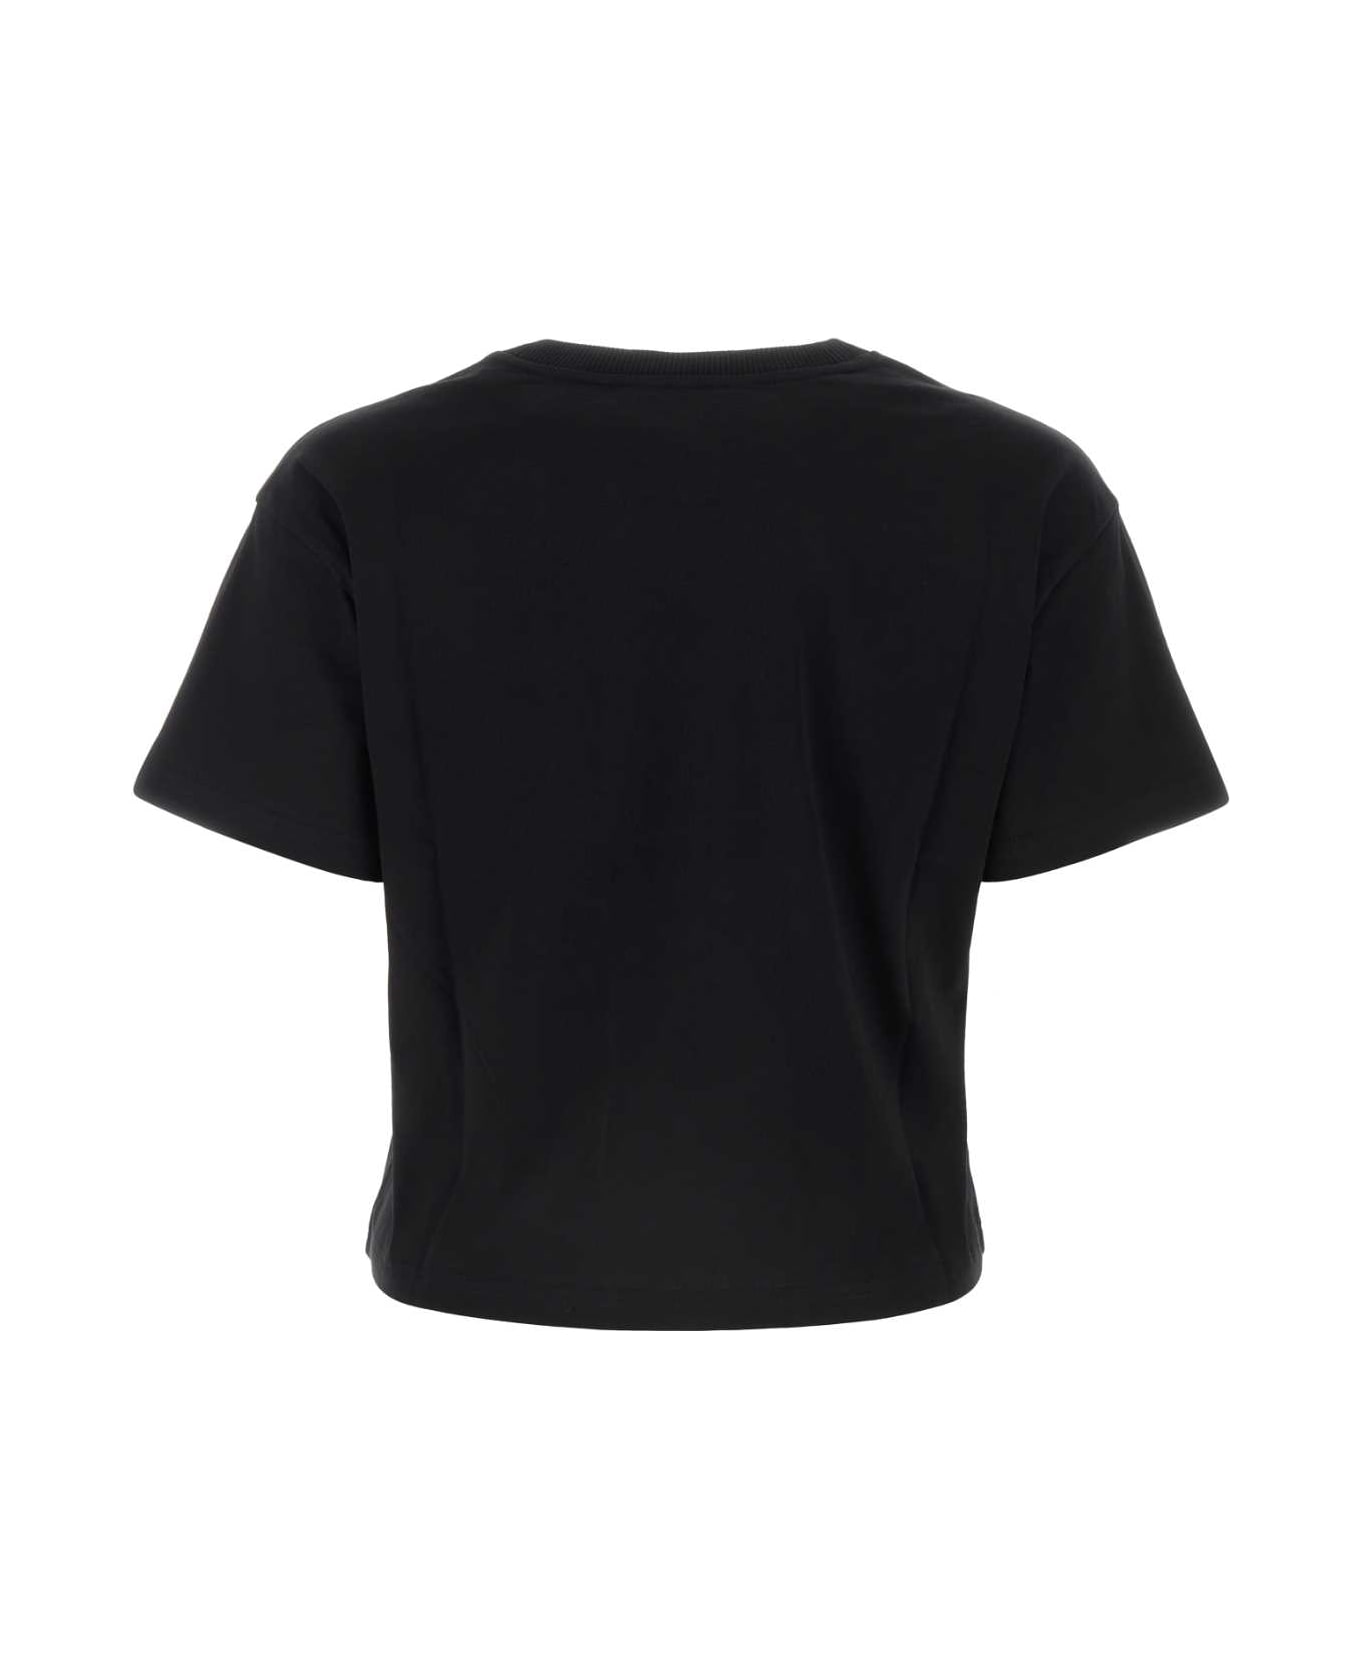 A.P.C. Black Cotton T-shirt - NOIRBLANC